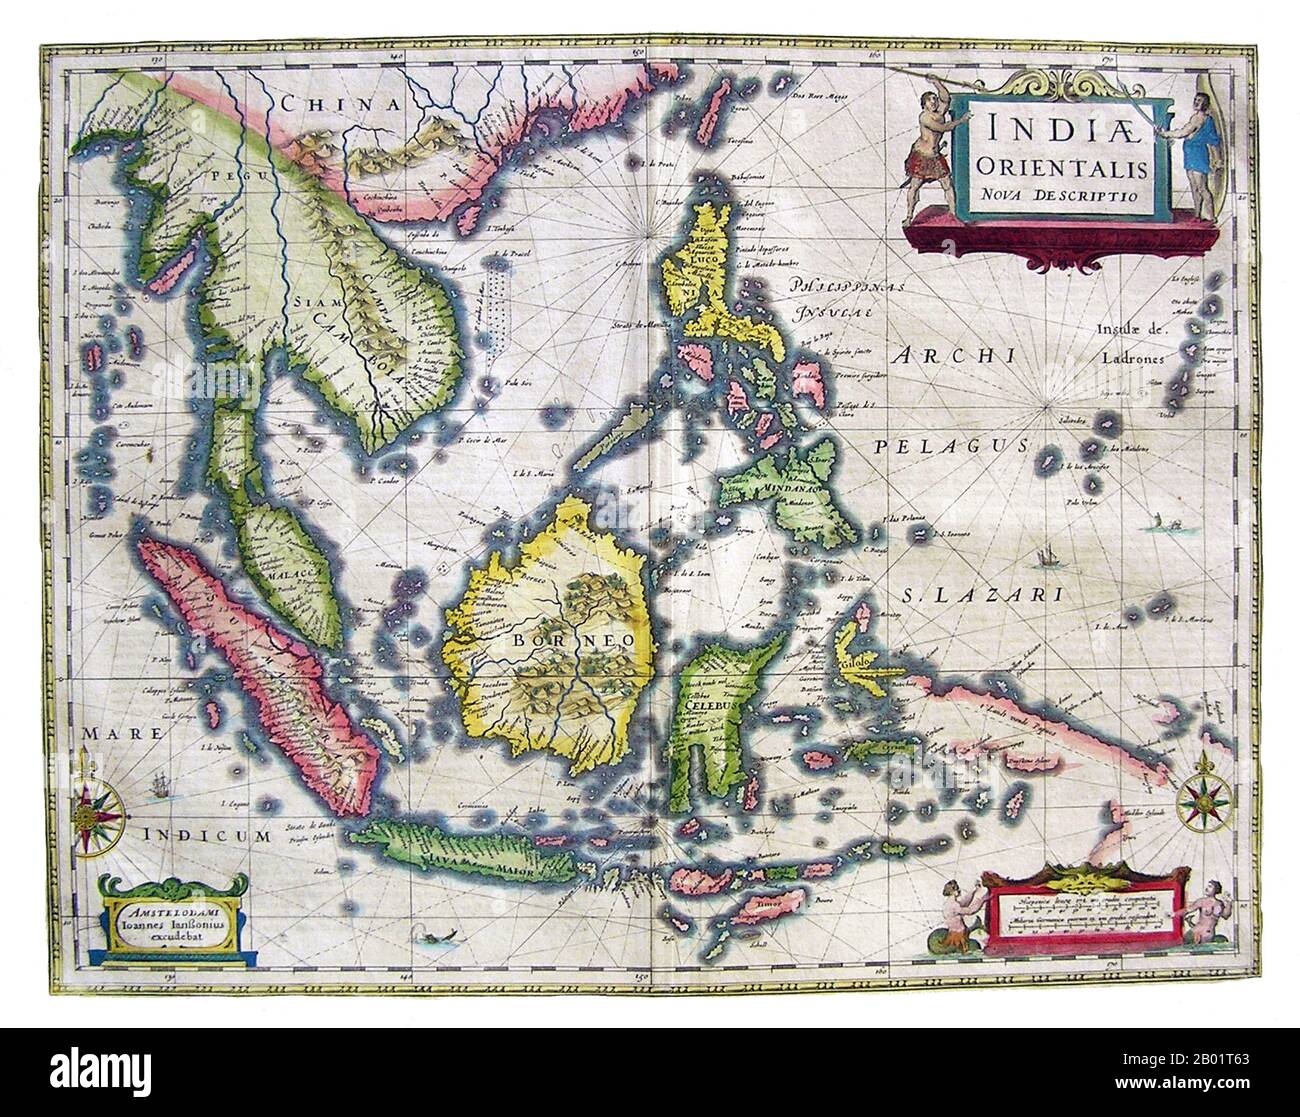 Asia: India Orientalis Nova Descriptio. Mappa del cartografo olandese Jan Jansson (1588-1664), 1636. Una prima mappa del sud-est asiatico che mostra l'estensione e i limiti della conoscenza europea della regione. Mentre le isole più grandi dell'Indonesia sono mappate con una certa precisione, la costa meridionale di Giava e le piccole Sundas sono mappate solo in linea generale, e la nuova Guinea è particolarmente incompleta. In tutte le aree vediamo caratteristiche costiere e insediamenti, ma ci sono pochi dettagli interni. Le Filippine sono ben descritte, e le Isole Marianne (Ladrones) sono date dimensioni e prominenza indebite. Foto Stock